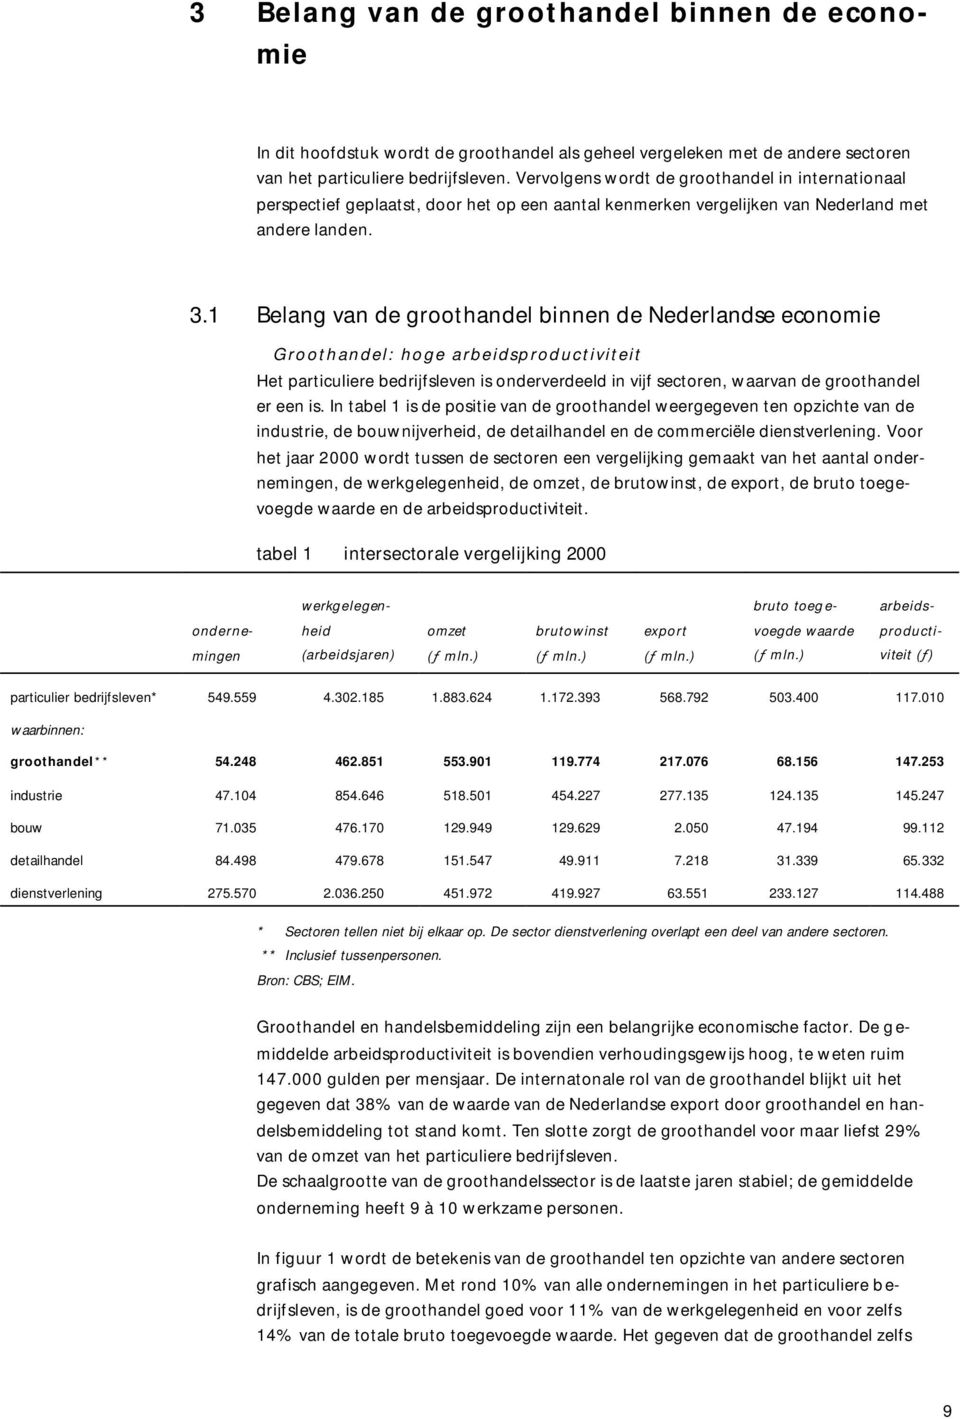 1 Belang van de groothandel binnen de Nederlandse economie Groothandel: hoge arbeidsproductiviteit Het particuliere bedrijfsleven is onderverdeeld in vijf sectoren, waarvan de groothandel er een is.